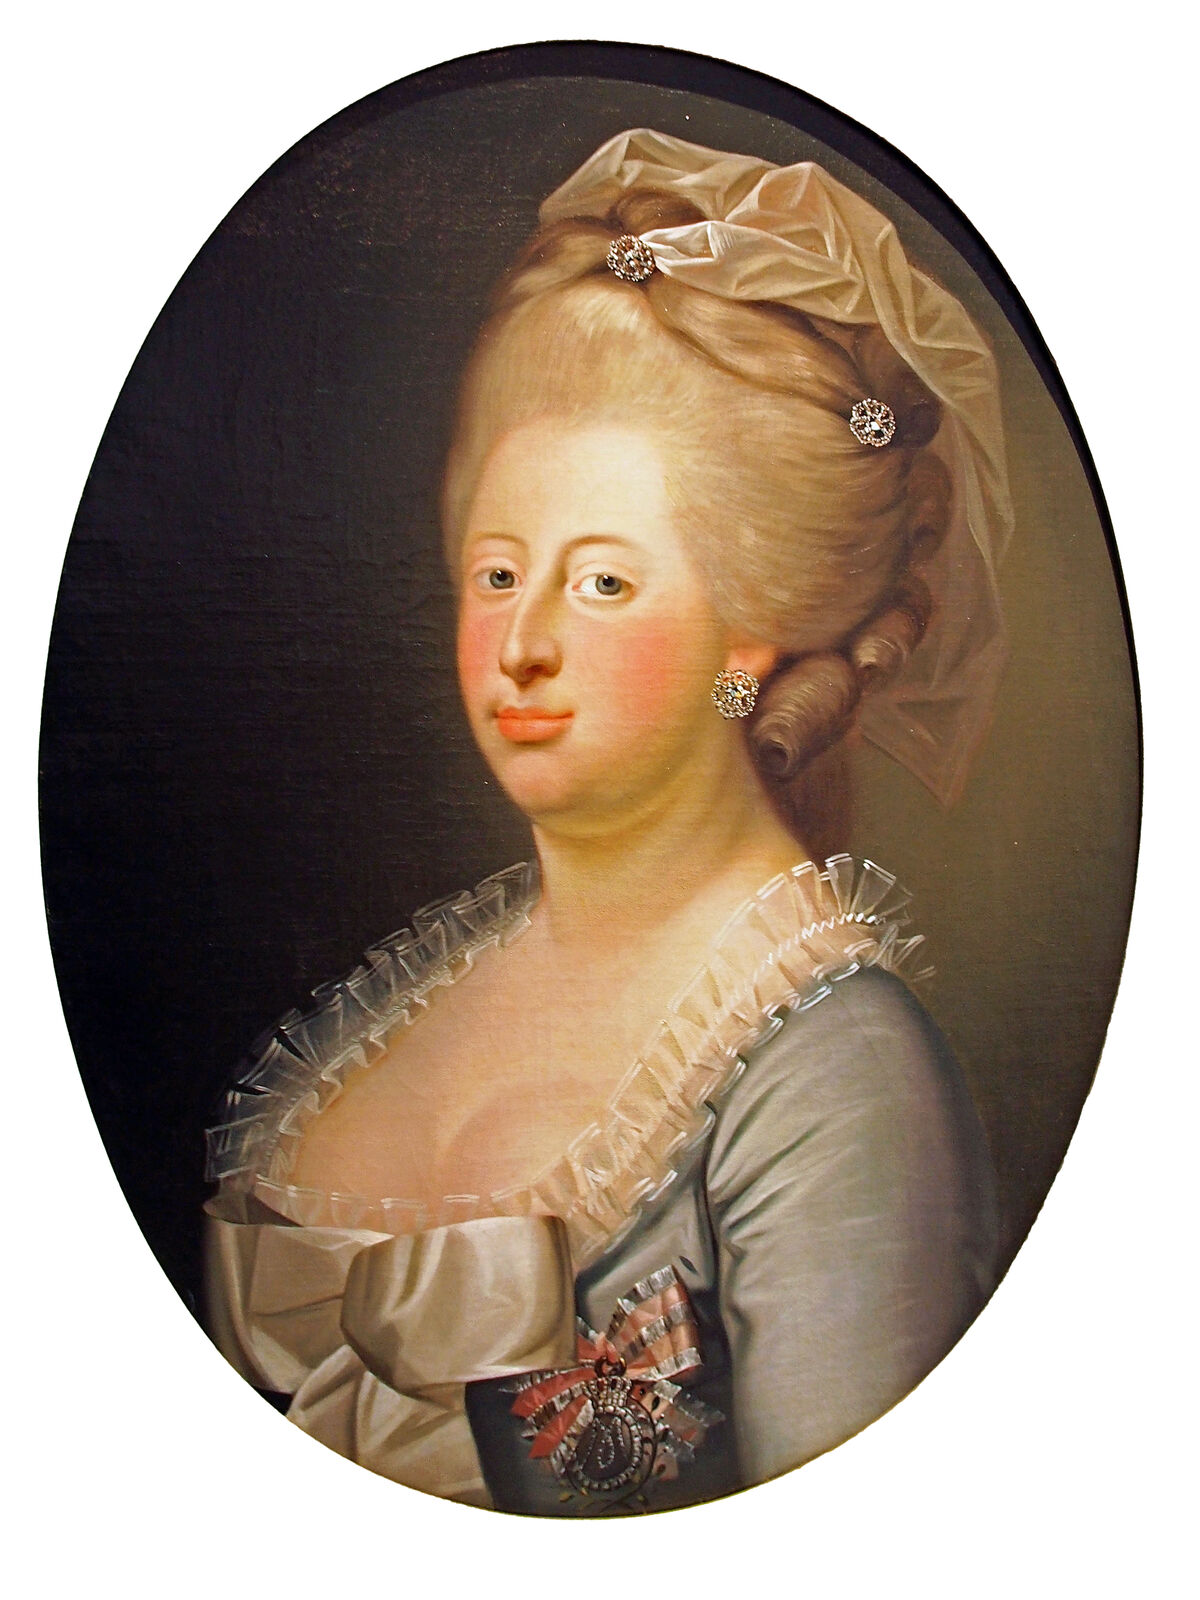 GFD 1/11: Königin Caroline Mathilde von Dänemark und Norwegen (Portrait von Jens Juel, 1771)